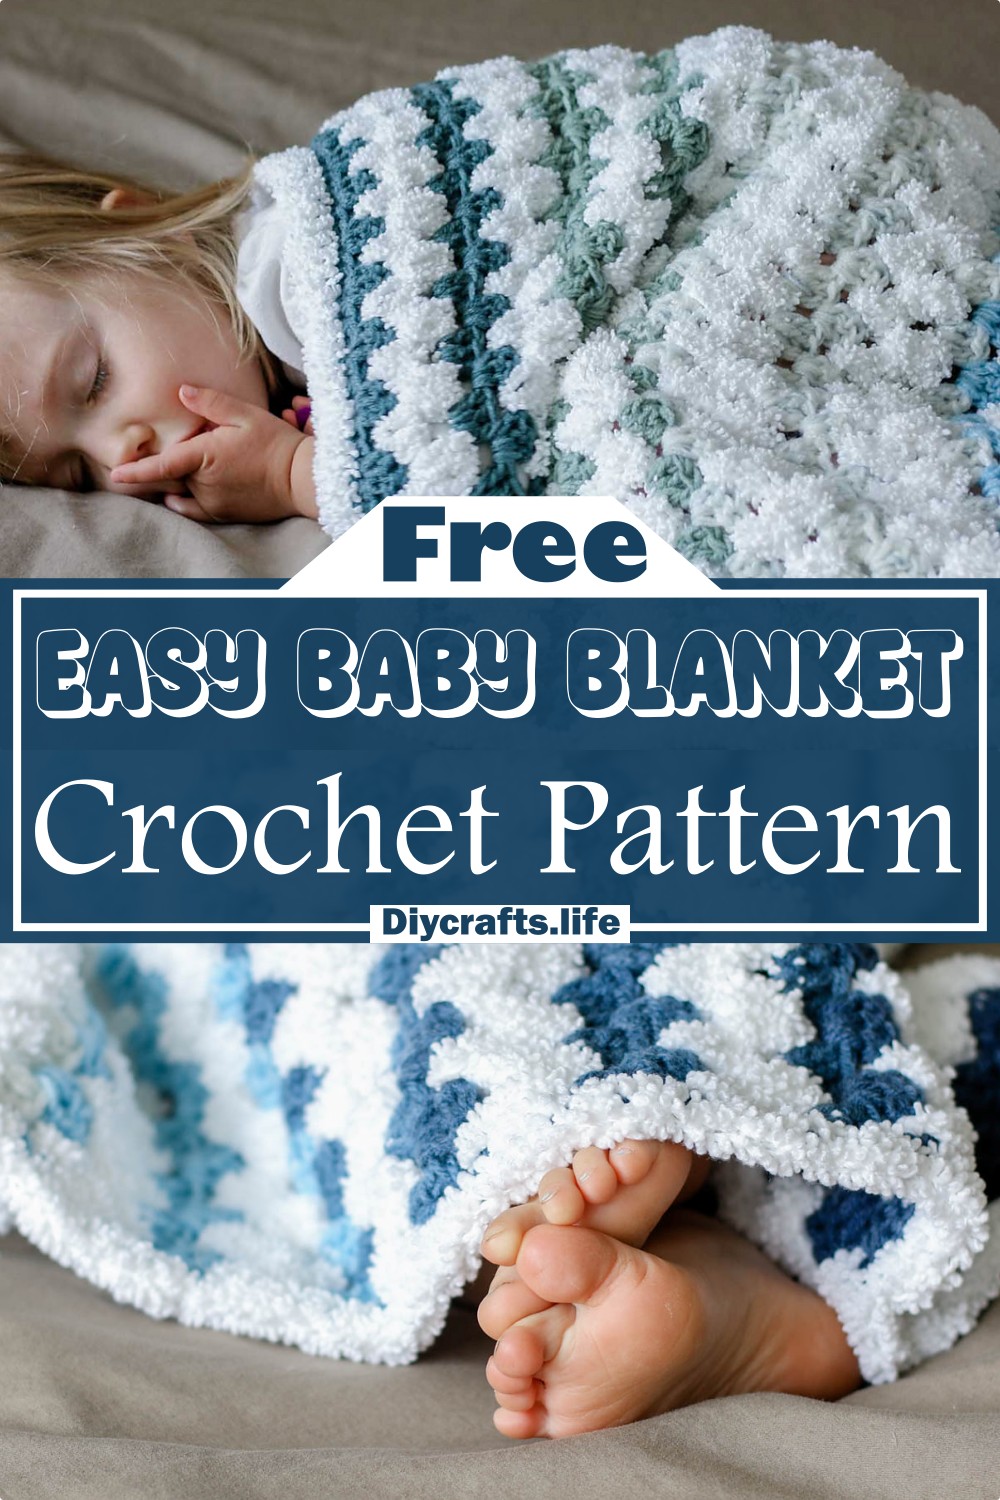 Easy Baby Blanket Crochet Pattern Free